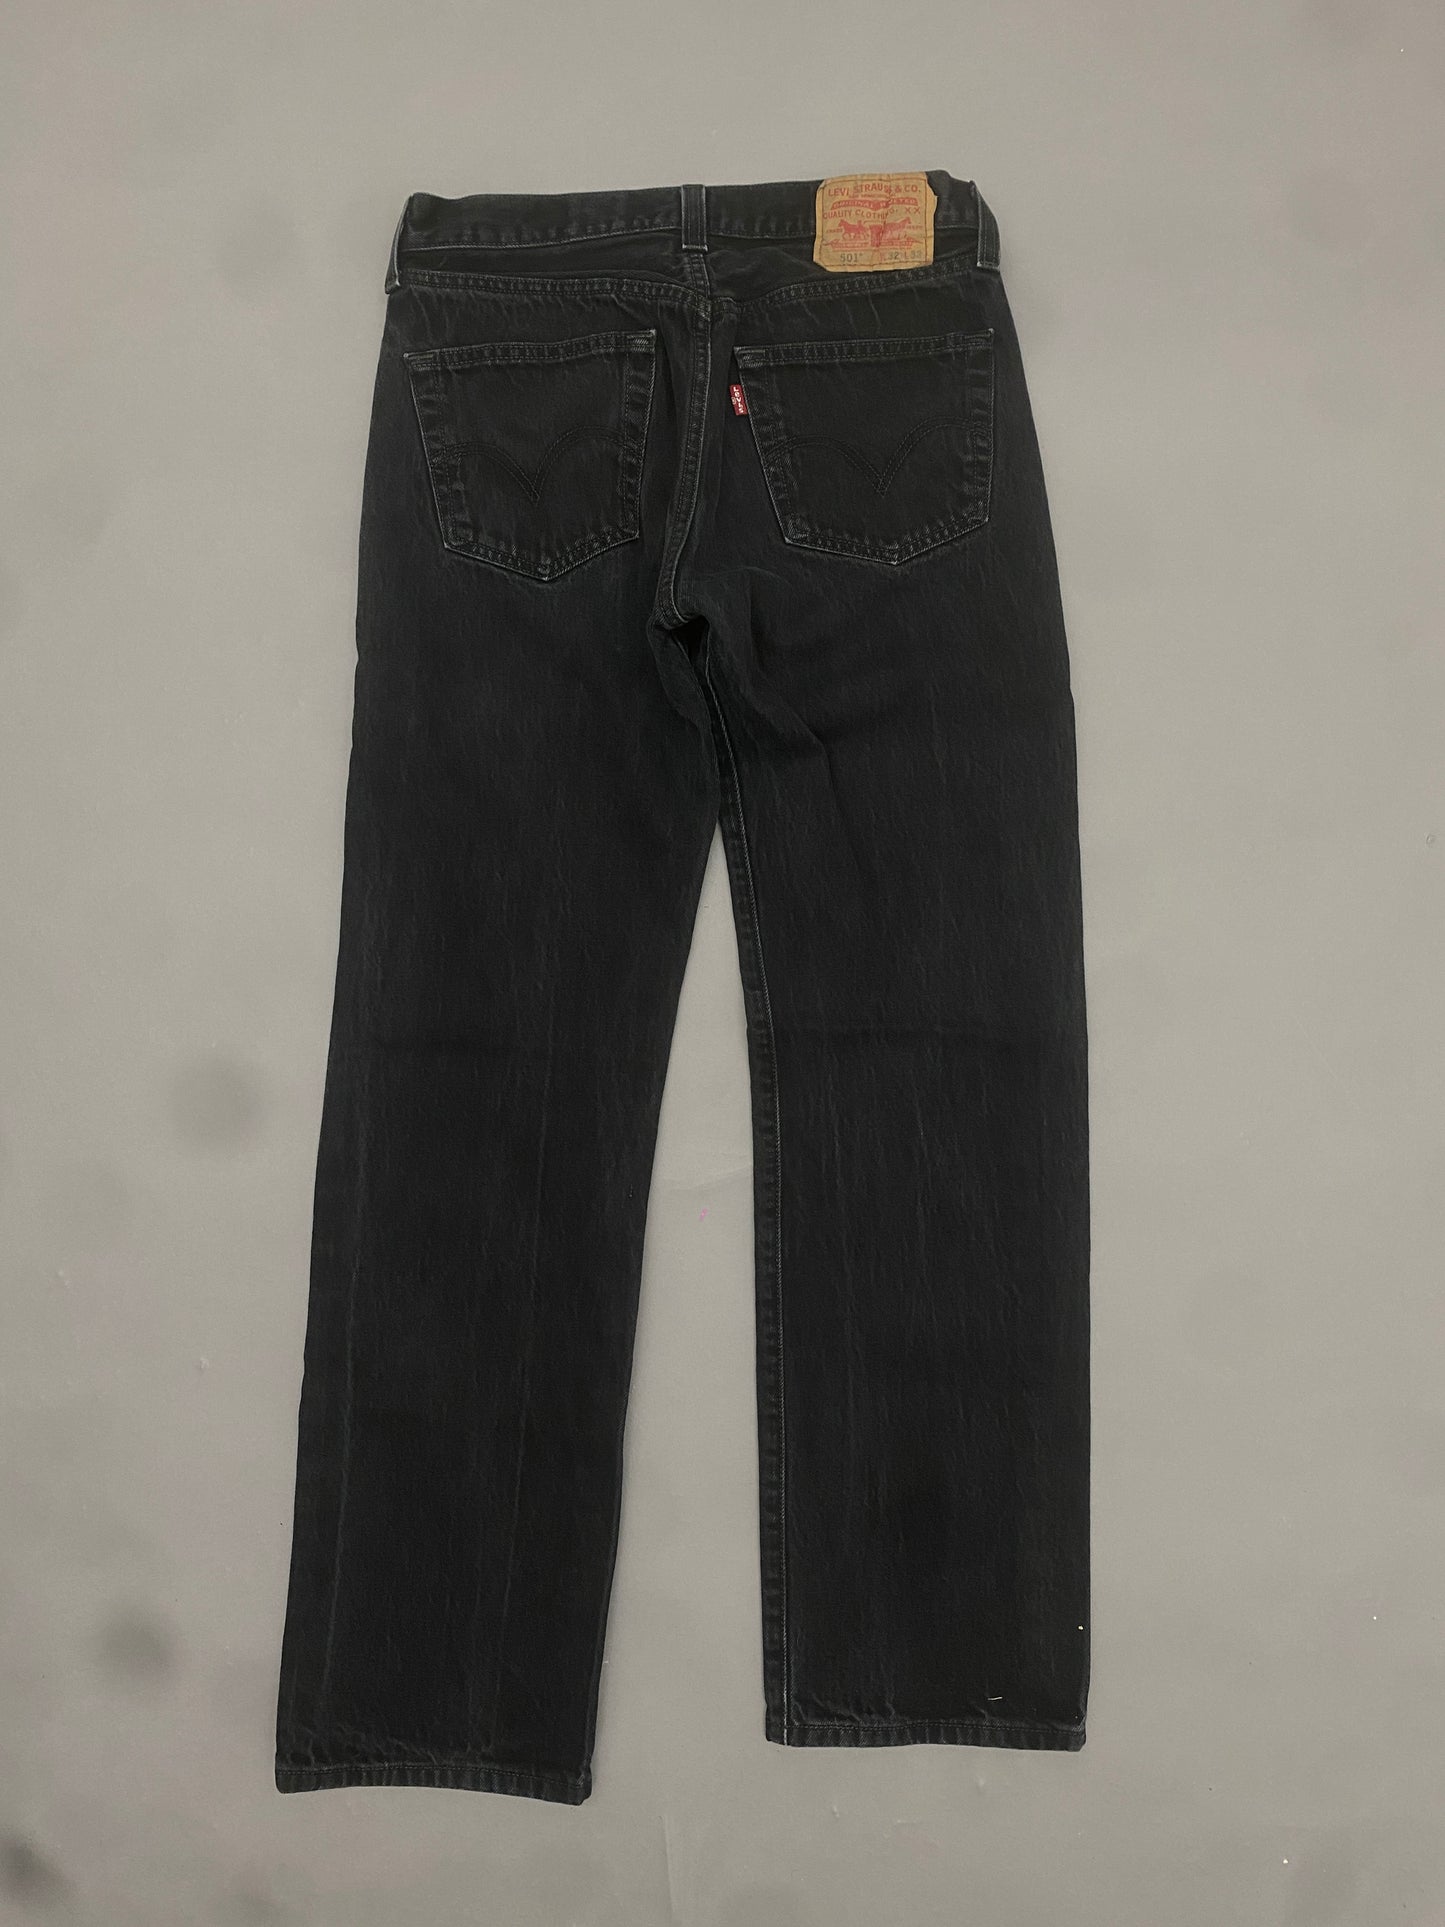 Levis 501 Vintage Jeans - 32 x 32